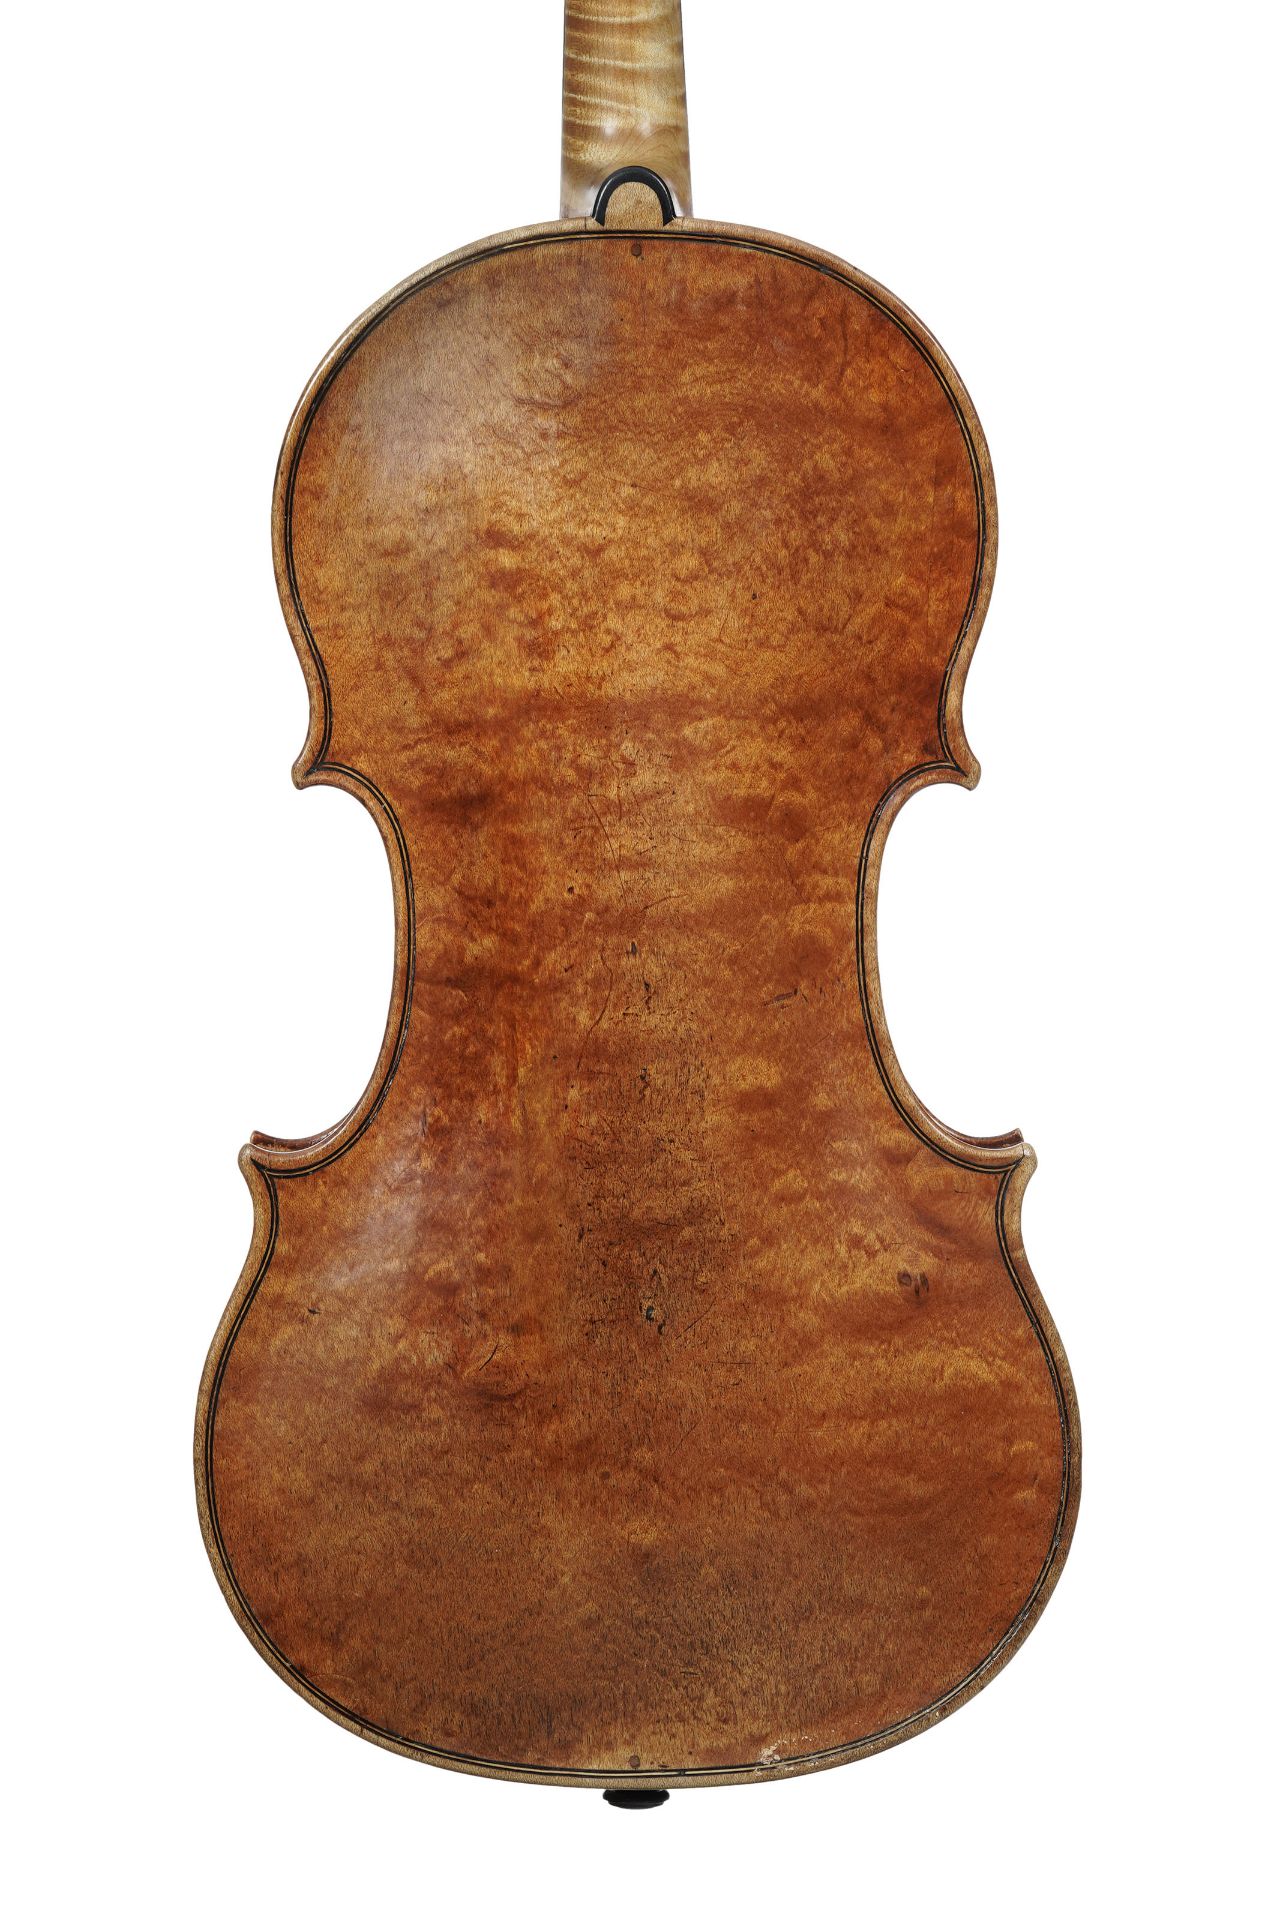 Violon par A&H Amati, Crémone 1584. (34.3 mm). Avec certificats W.E. Hill & Sons et H. Werro - Bild 2 aus 14